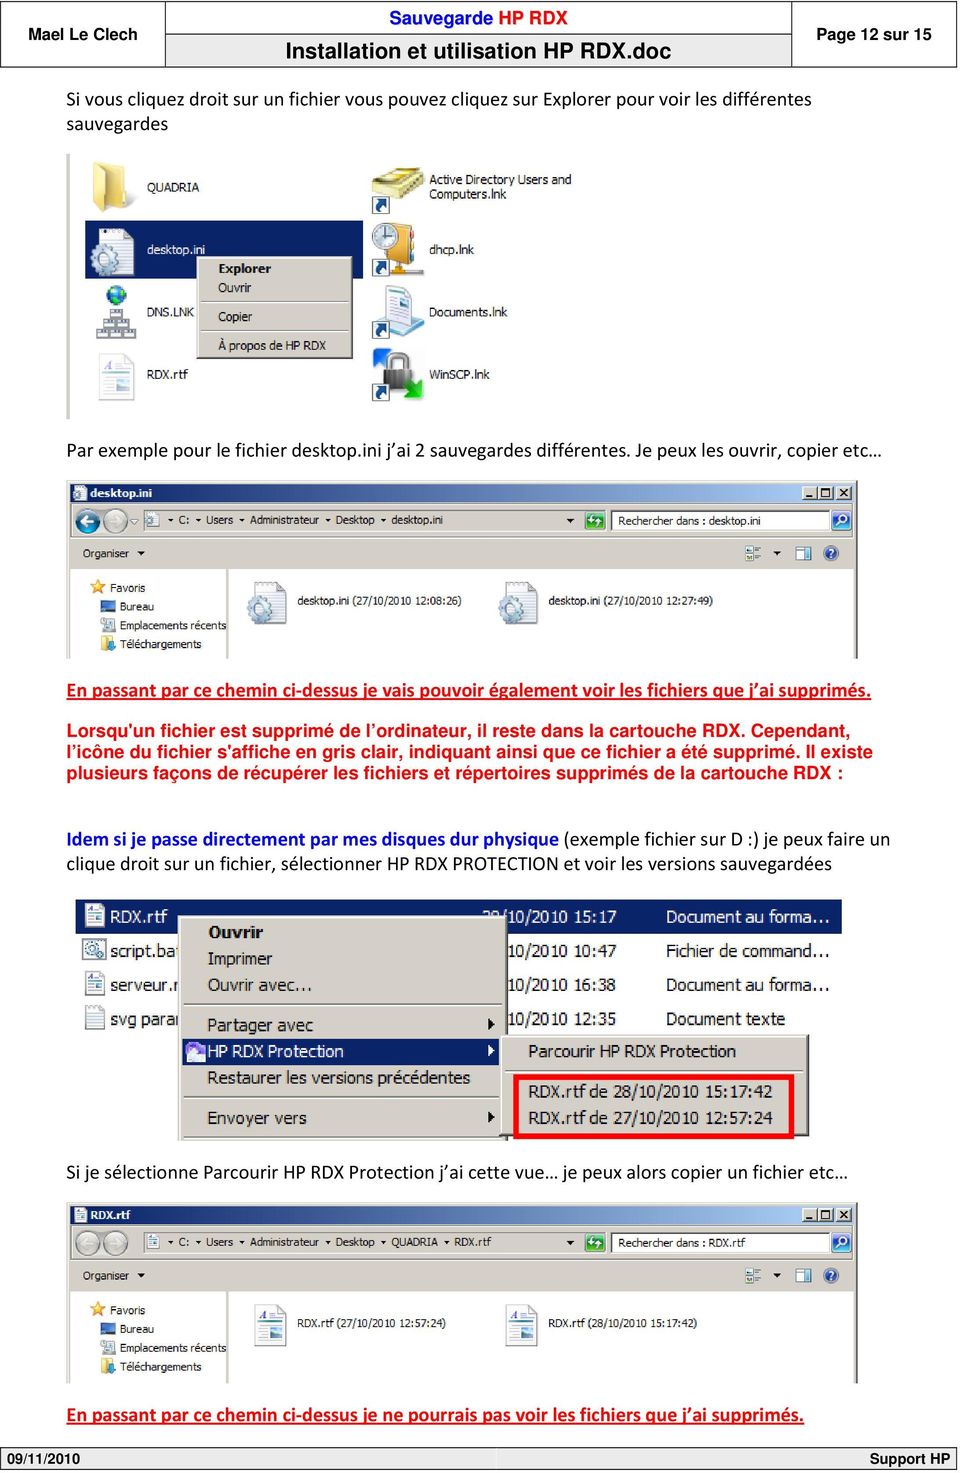 Lorsqu'un fichier est supprimé de l ordinateur, il reste dans la cartouche RDX. Cependant, l icône du fichier s'affiche en gris clair, indiquant ainsi que ce fichier a été supprimé.